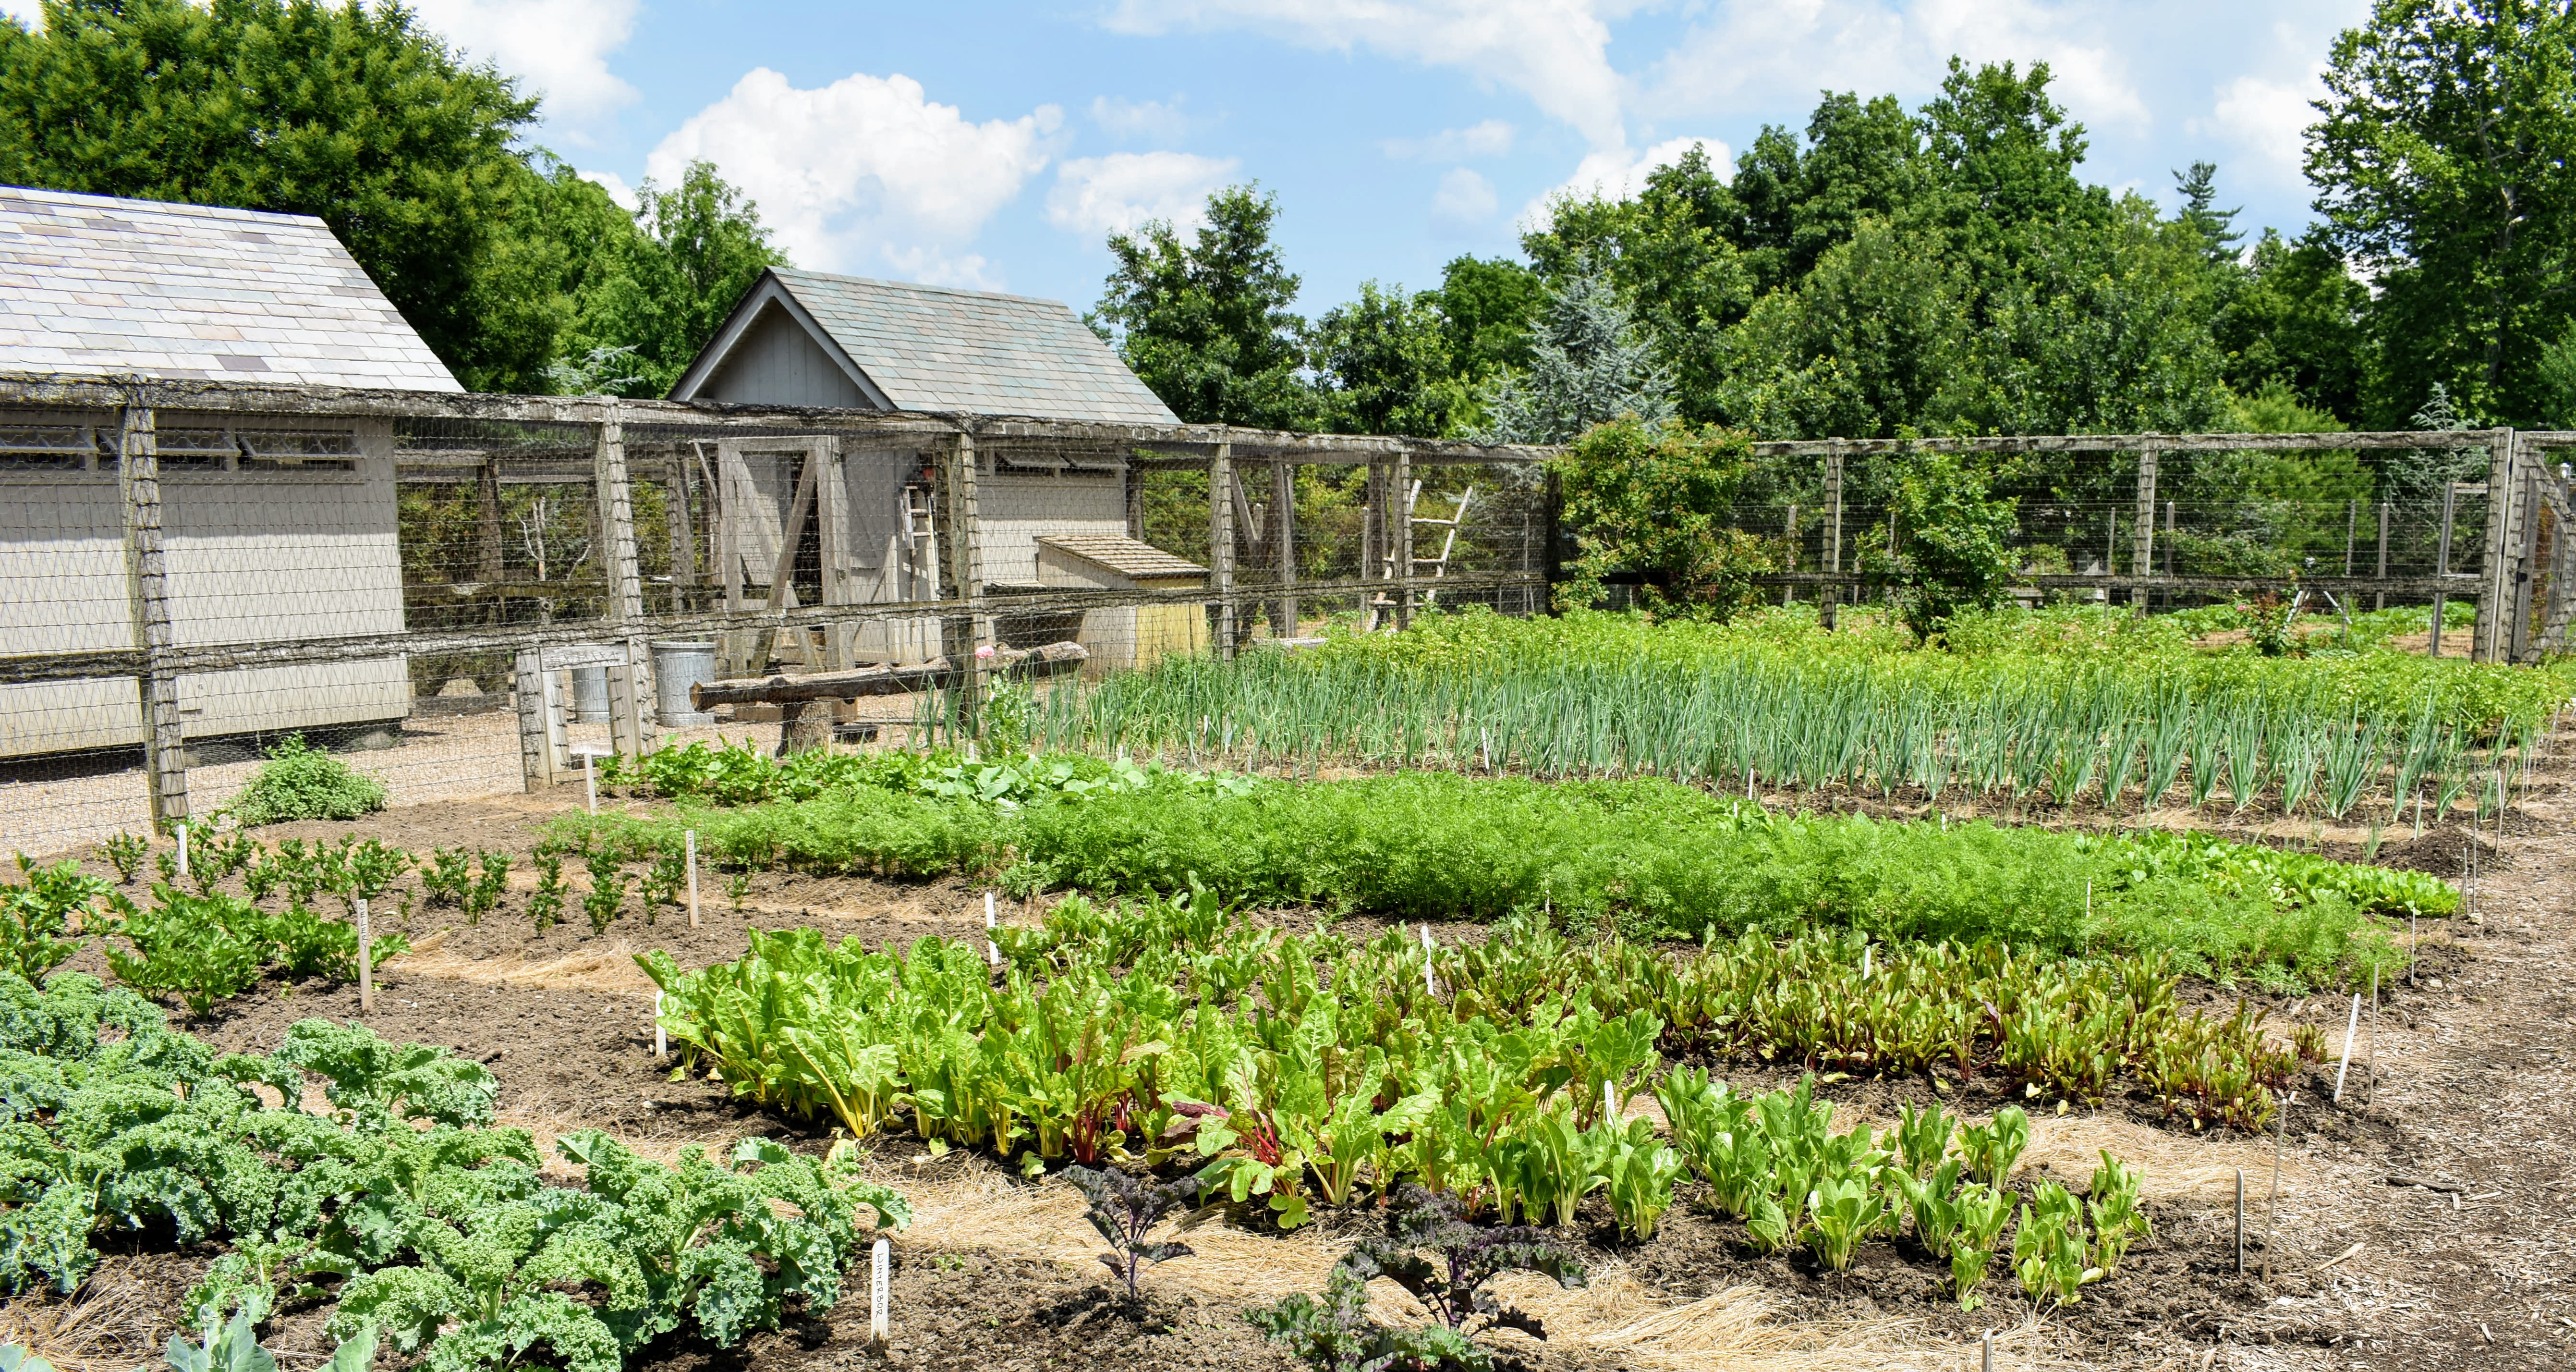 farm vegetable garden